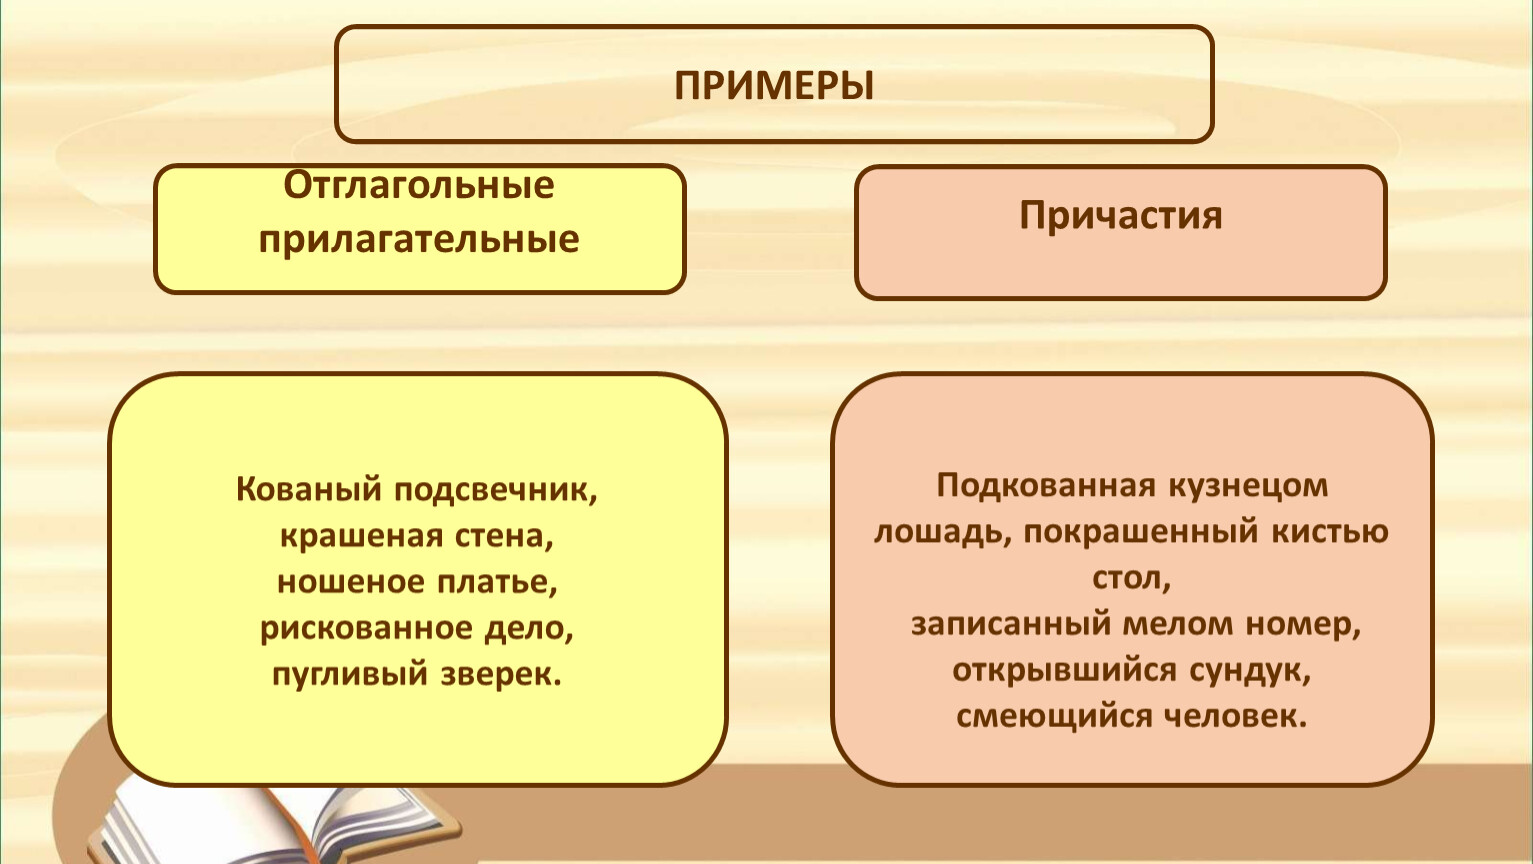 Контрольная работа по русскому языку в 7 классе по теме 